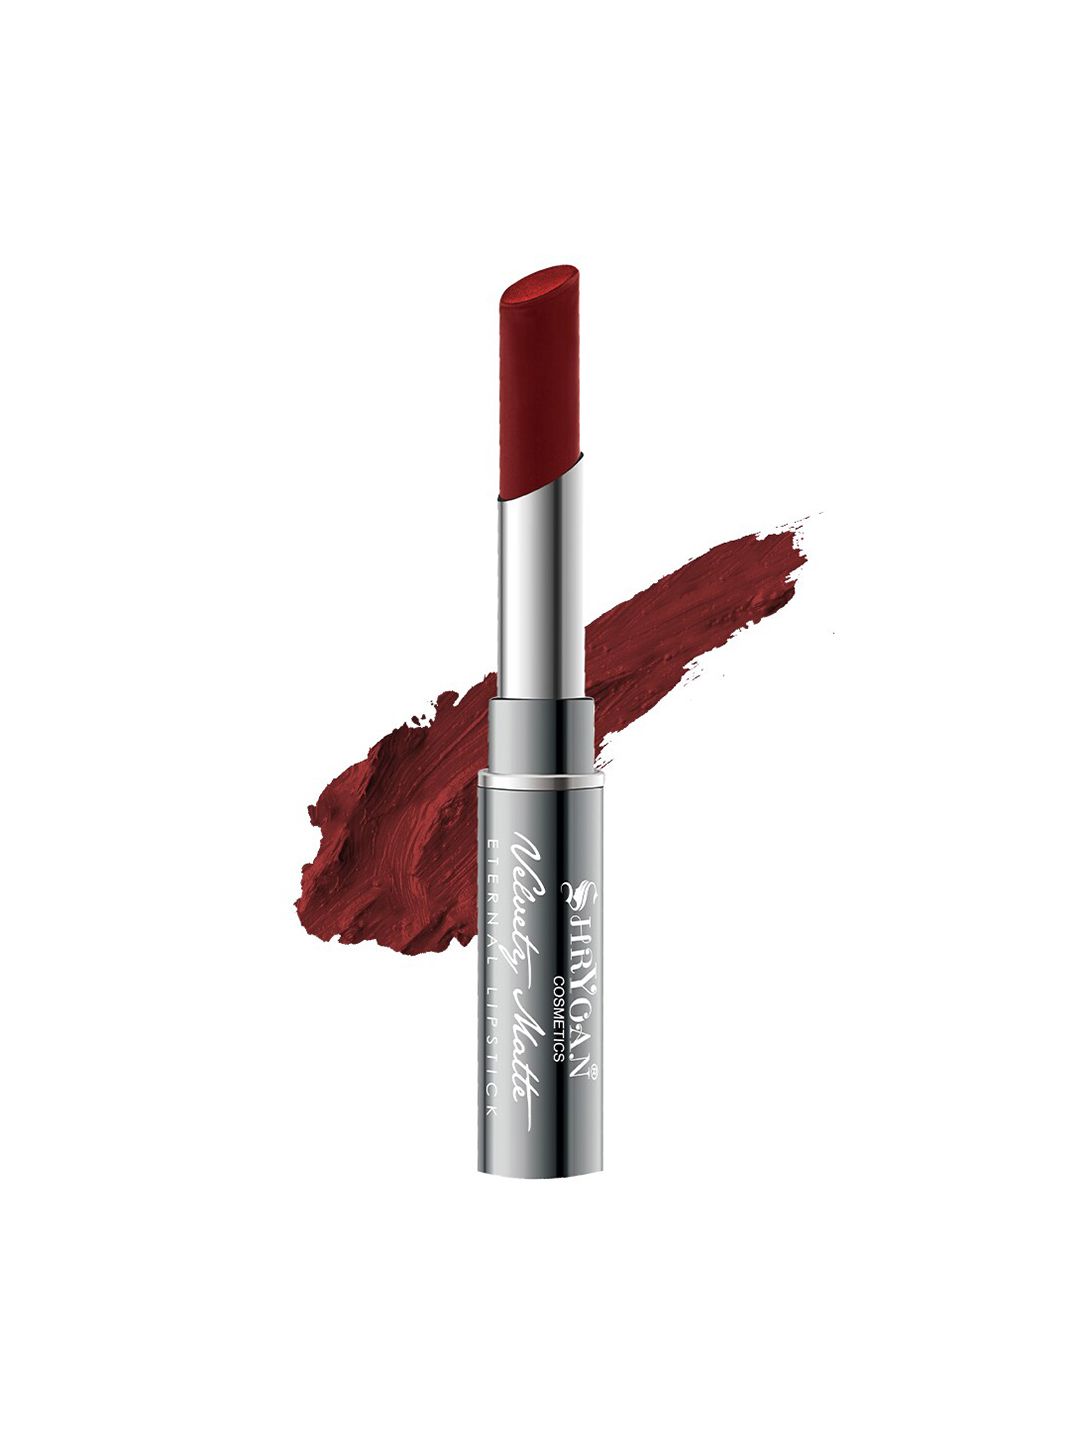 SHRYOAN Velvety Matte Non-Transfer Eternal Lipstick - Light Mahroon 21 Price in India